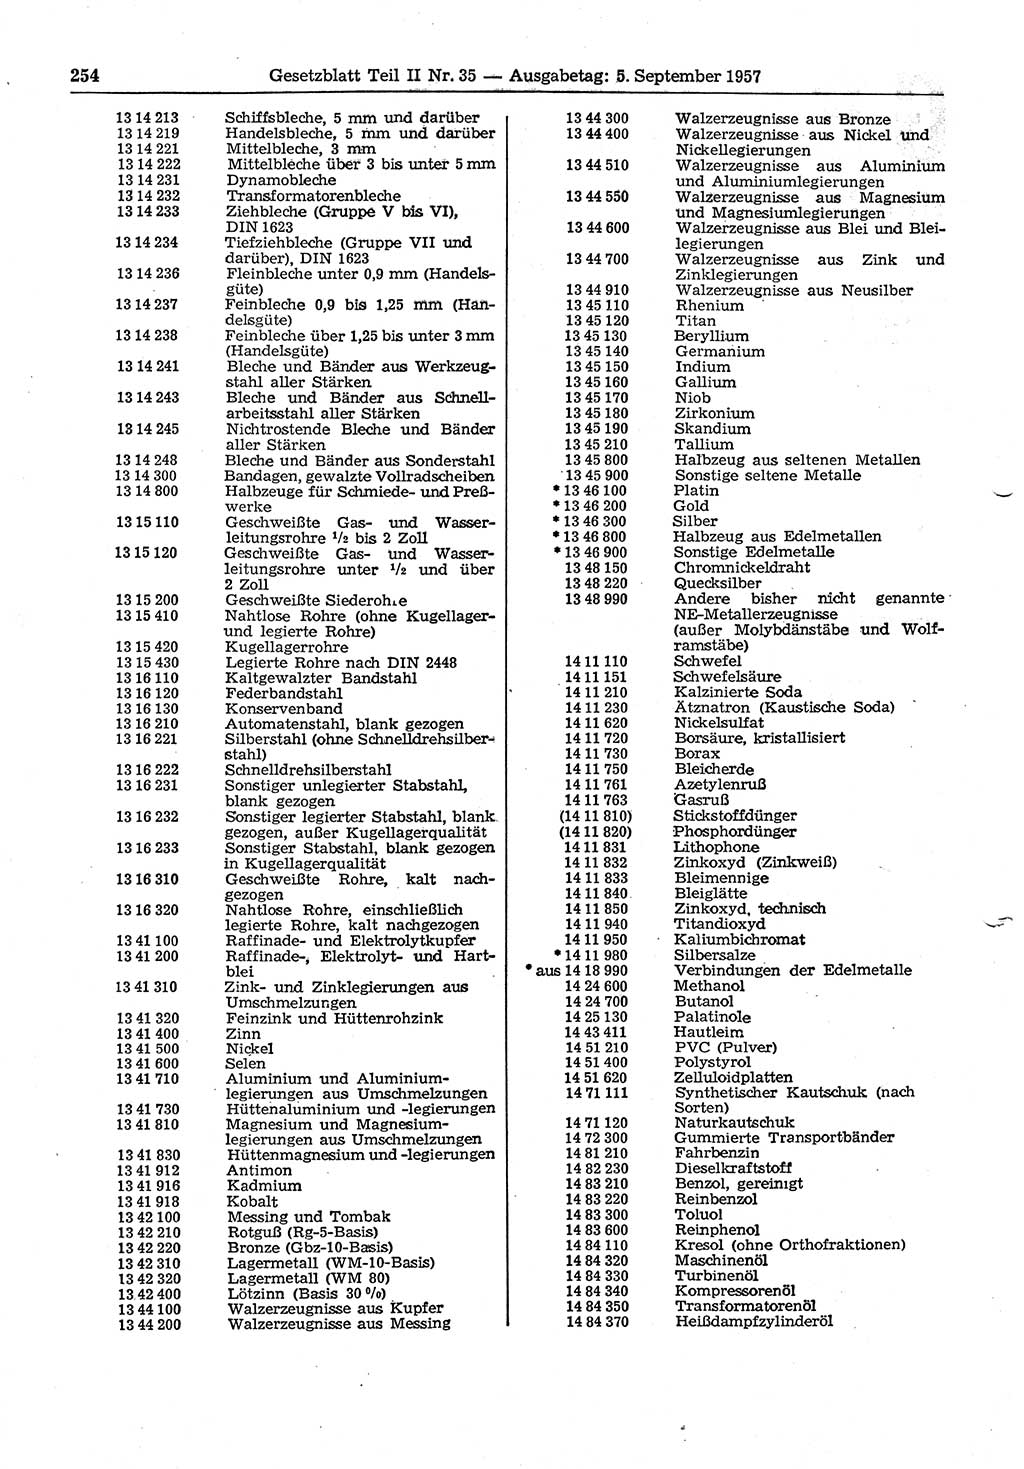 Gesetzblatt (GBl.) der Deutschen Demokratischen Republik (DDR) Teil ⅠⅠ 1957, Seite 254 (GBl. DDR ⅠⅠ 1957, S. 254)